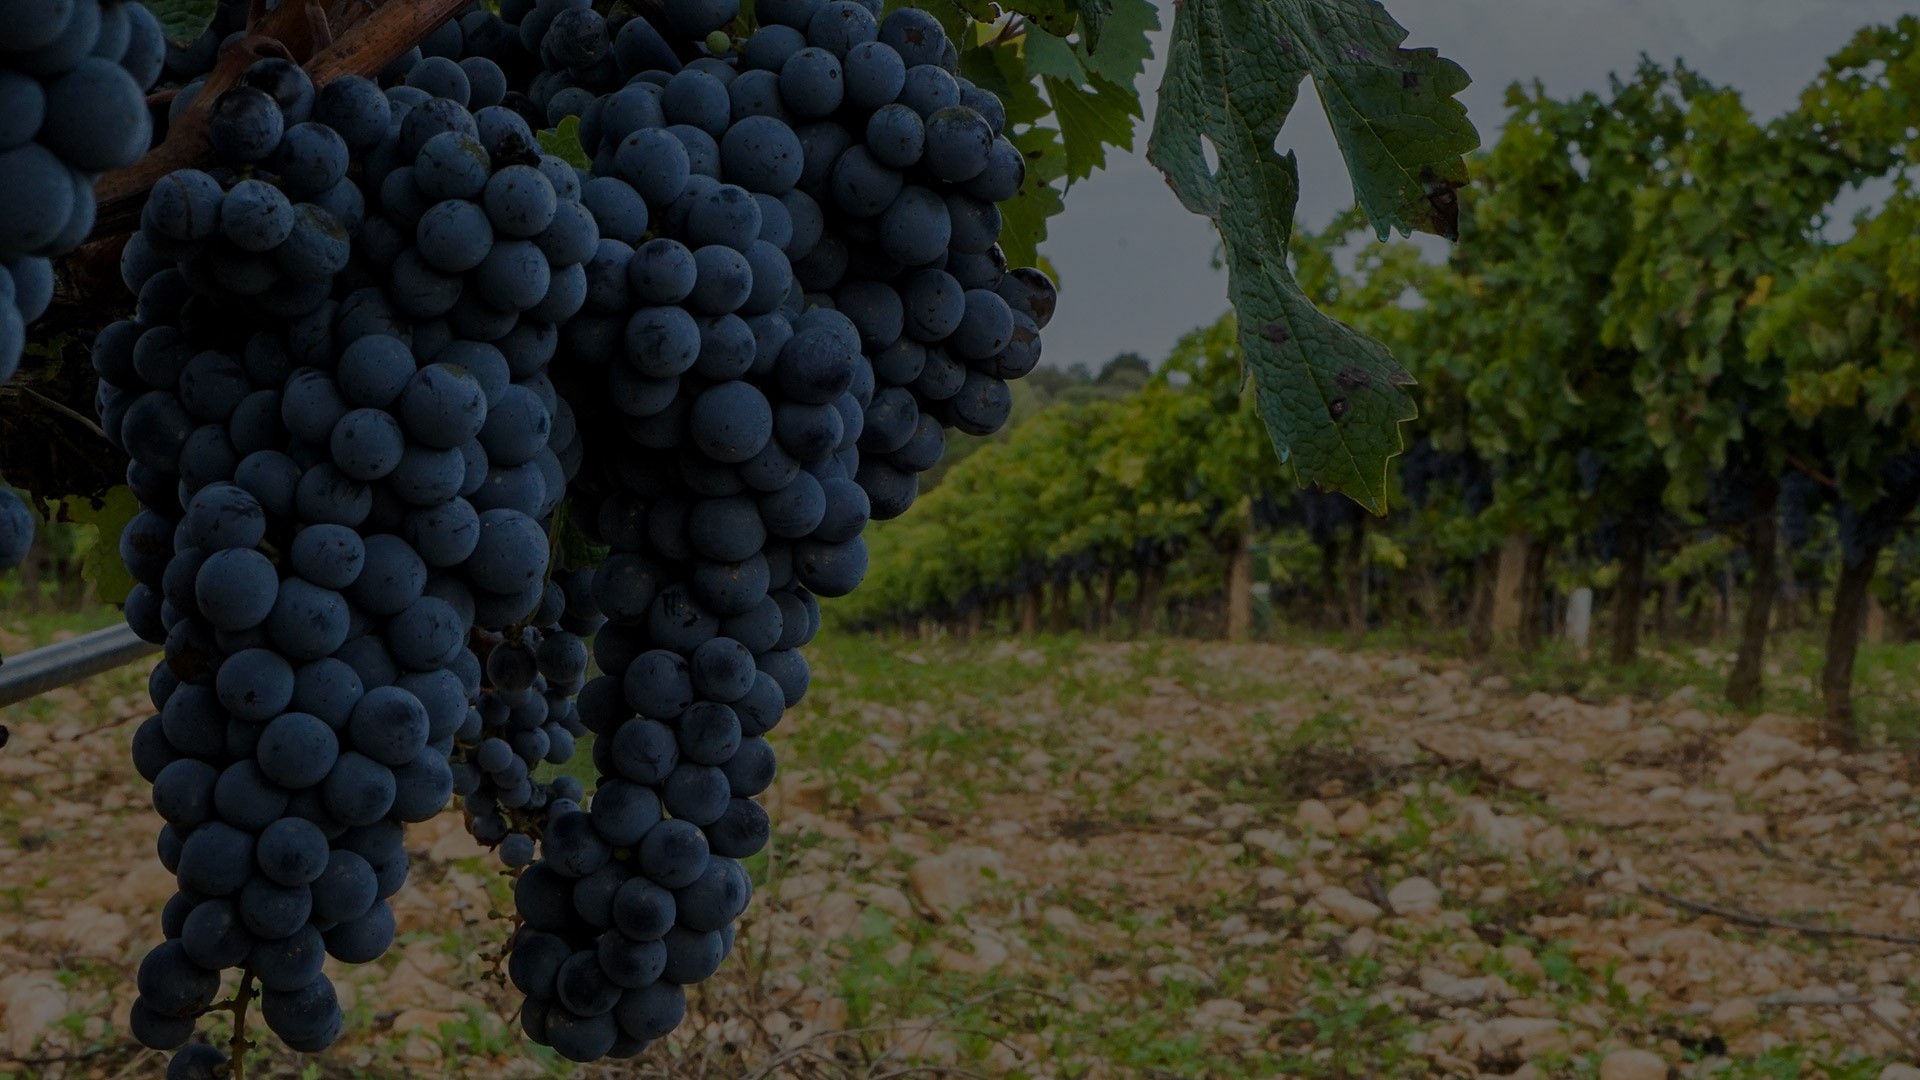 BIODIVERSIDAD Y RESPETO POR LA NATURALEZA Volver a la viticultura y el trabajo en viña que se había practicado desde hace siglos, basándonos en el profundo conocimiento de la naturaleza y en la pasión por la fruta